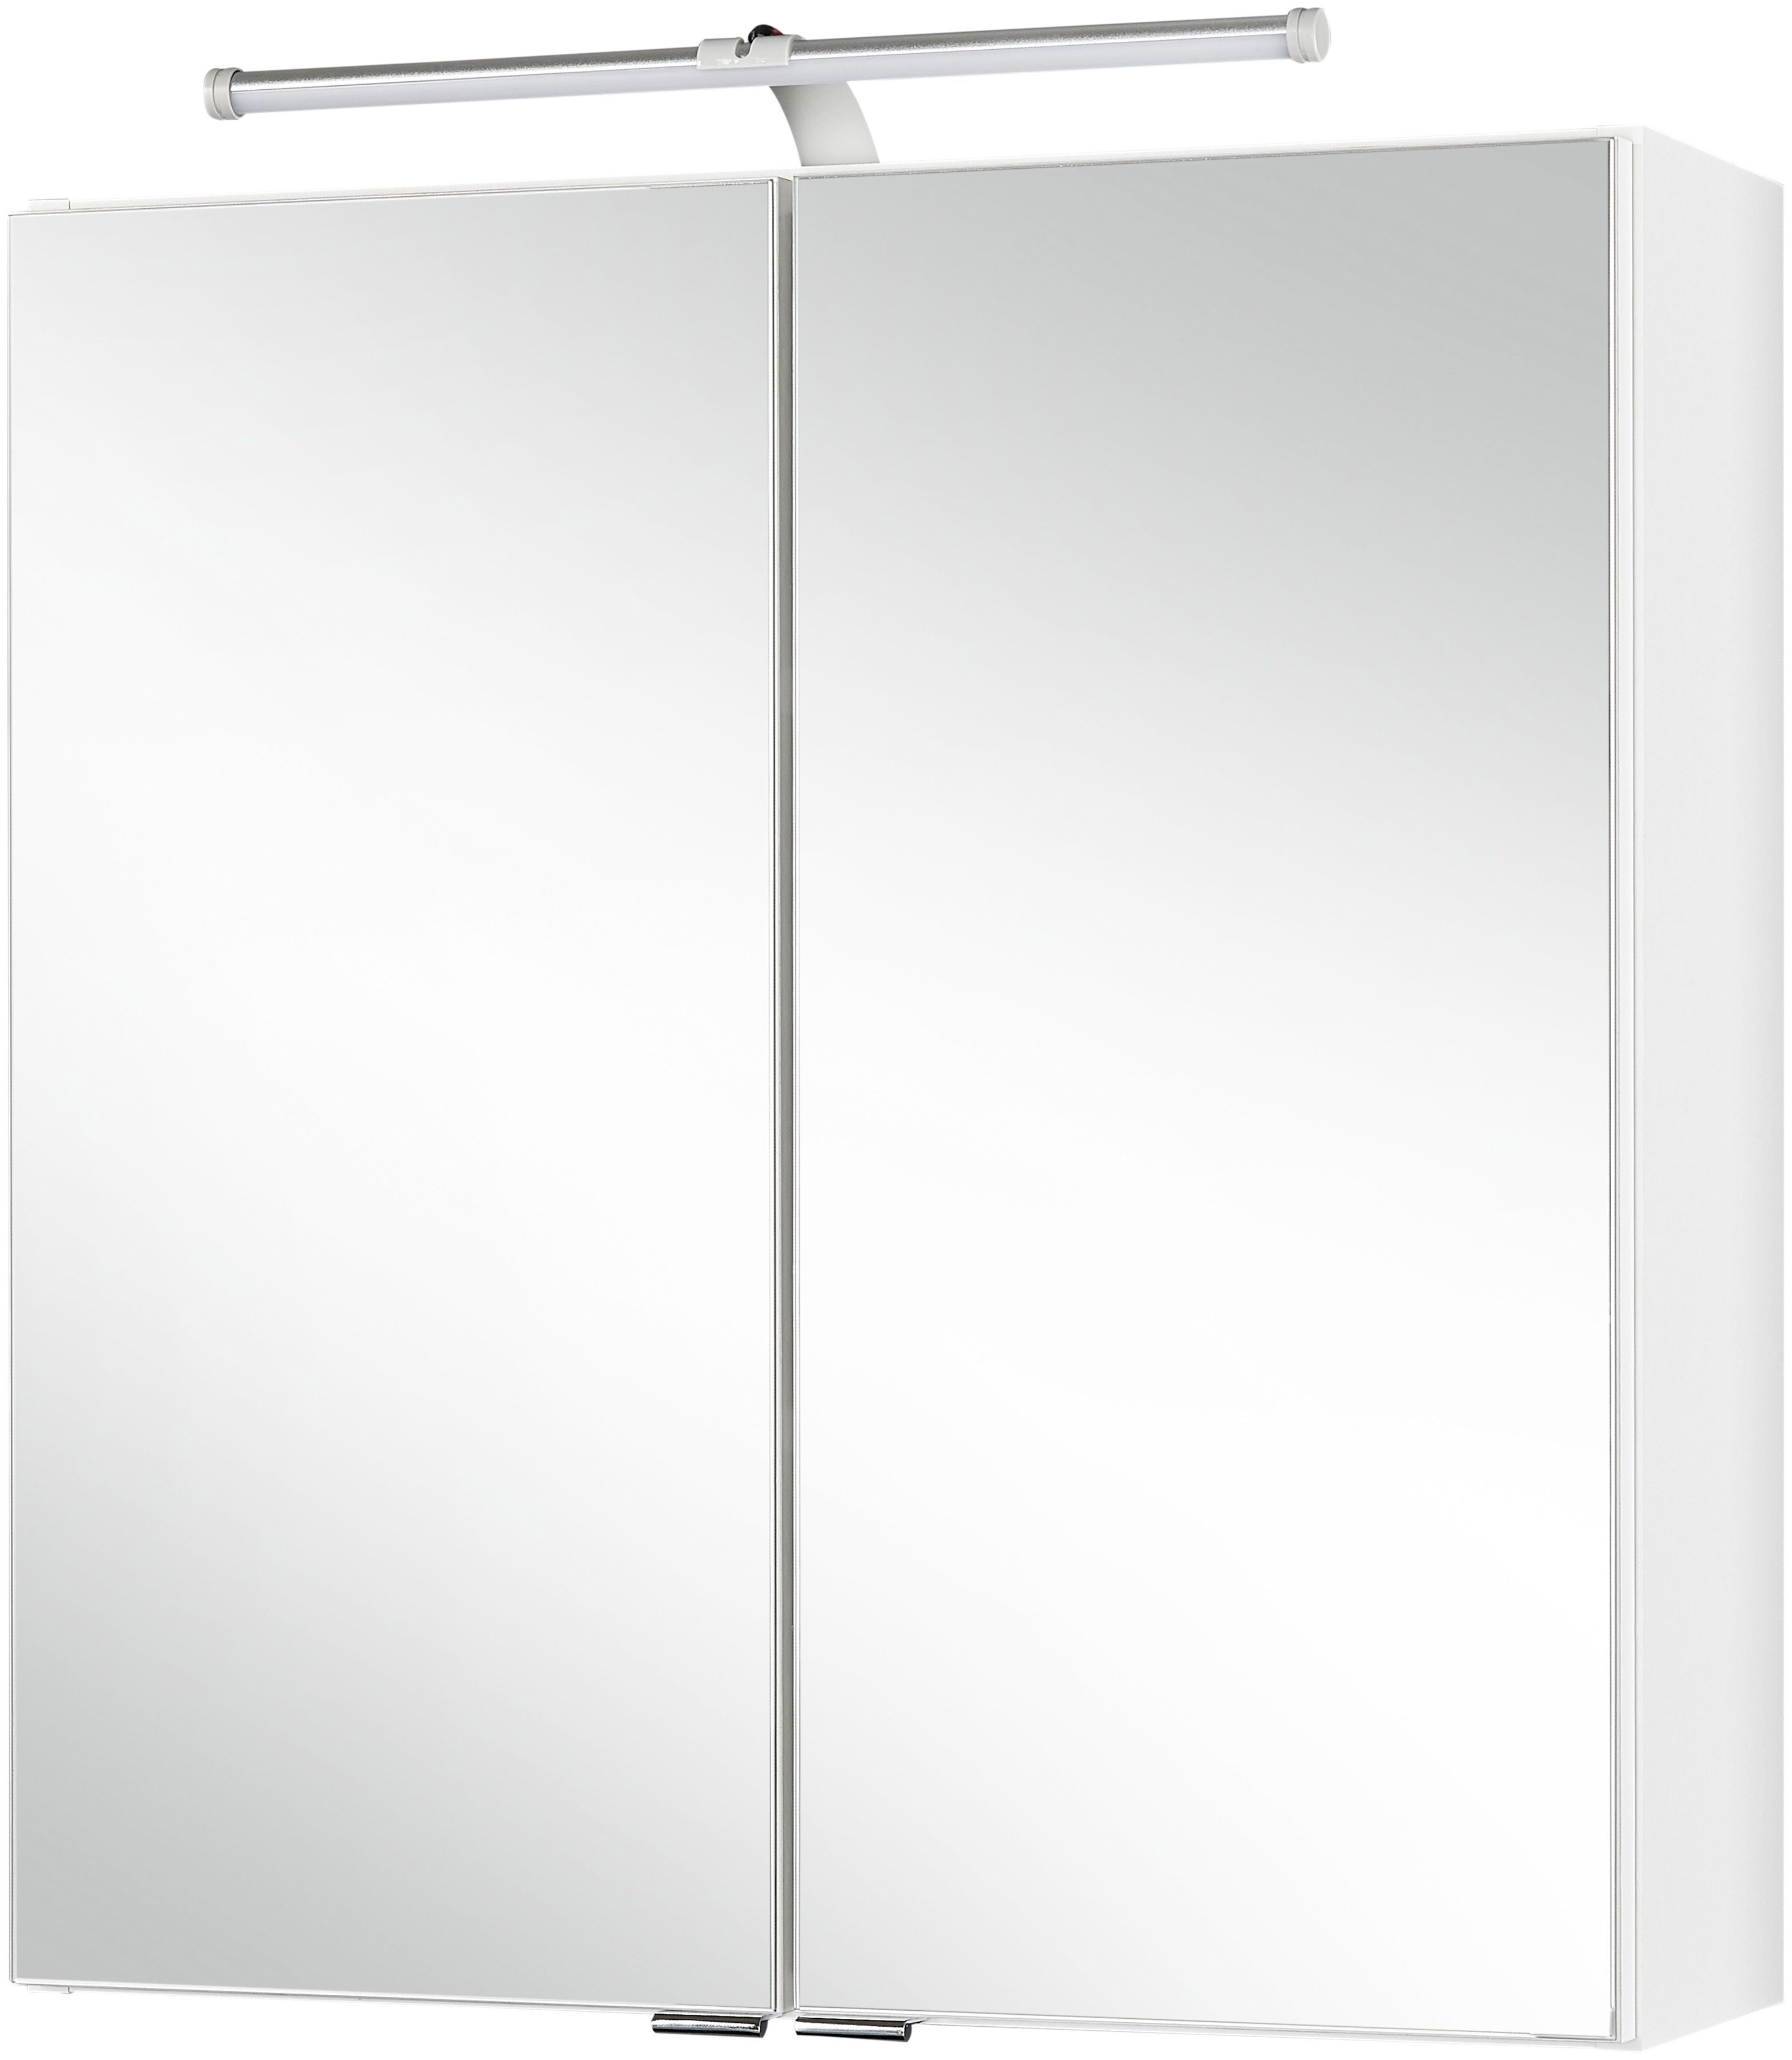 HELD MÖBEL Spiegelschrank Turin Breite 60 cm, mit LED-Aufbauleuchte | Spiegelschränke